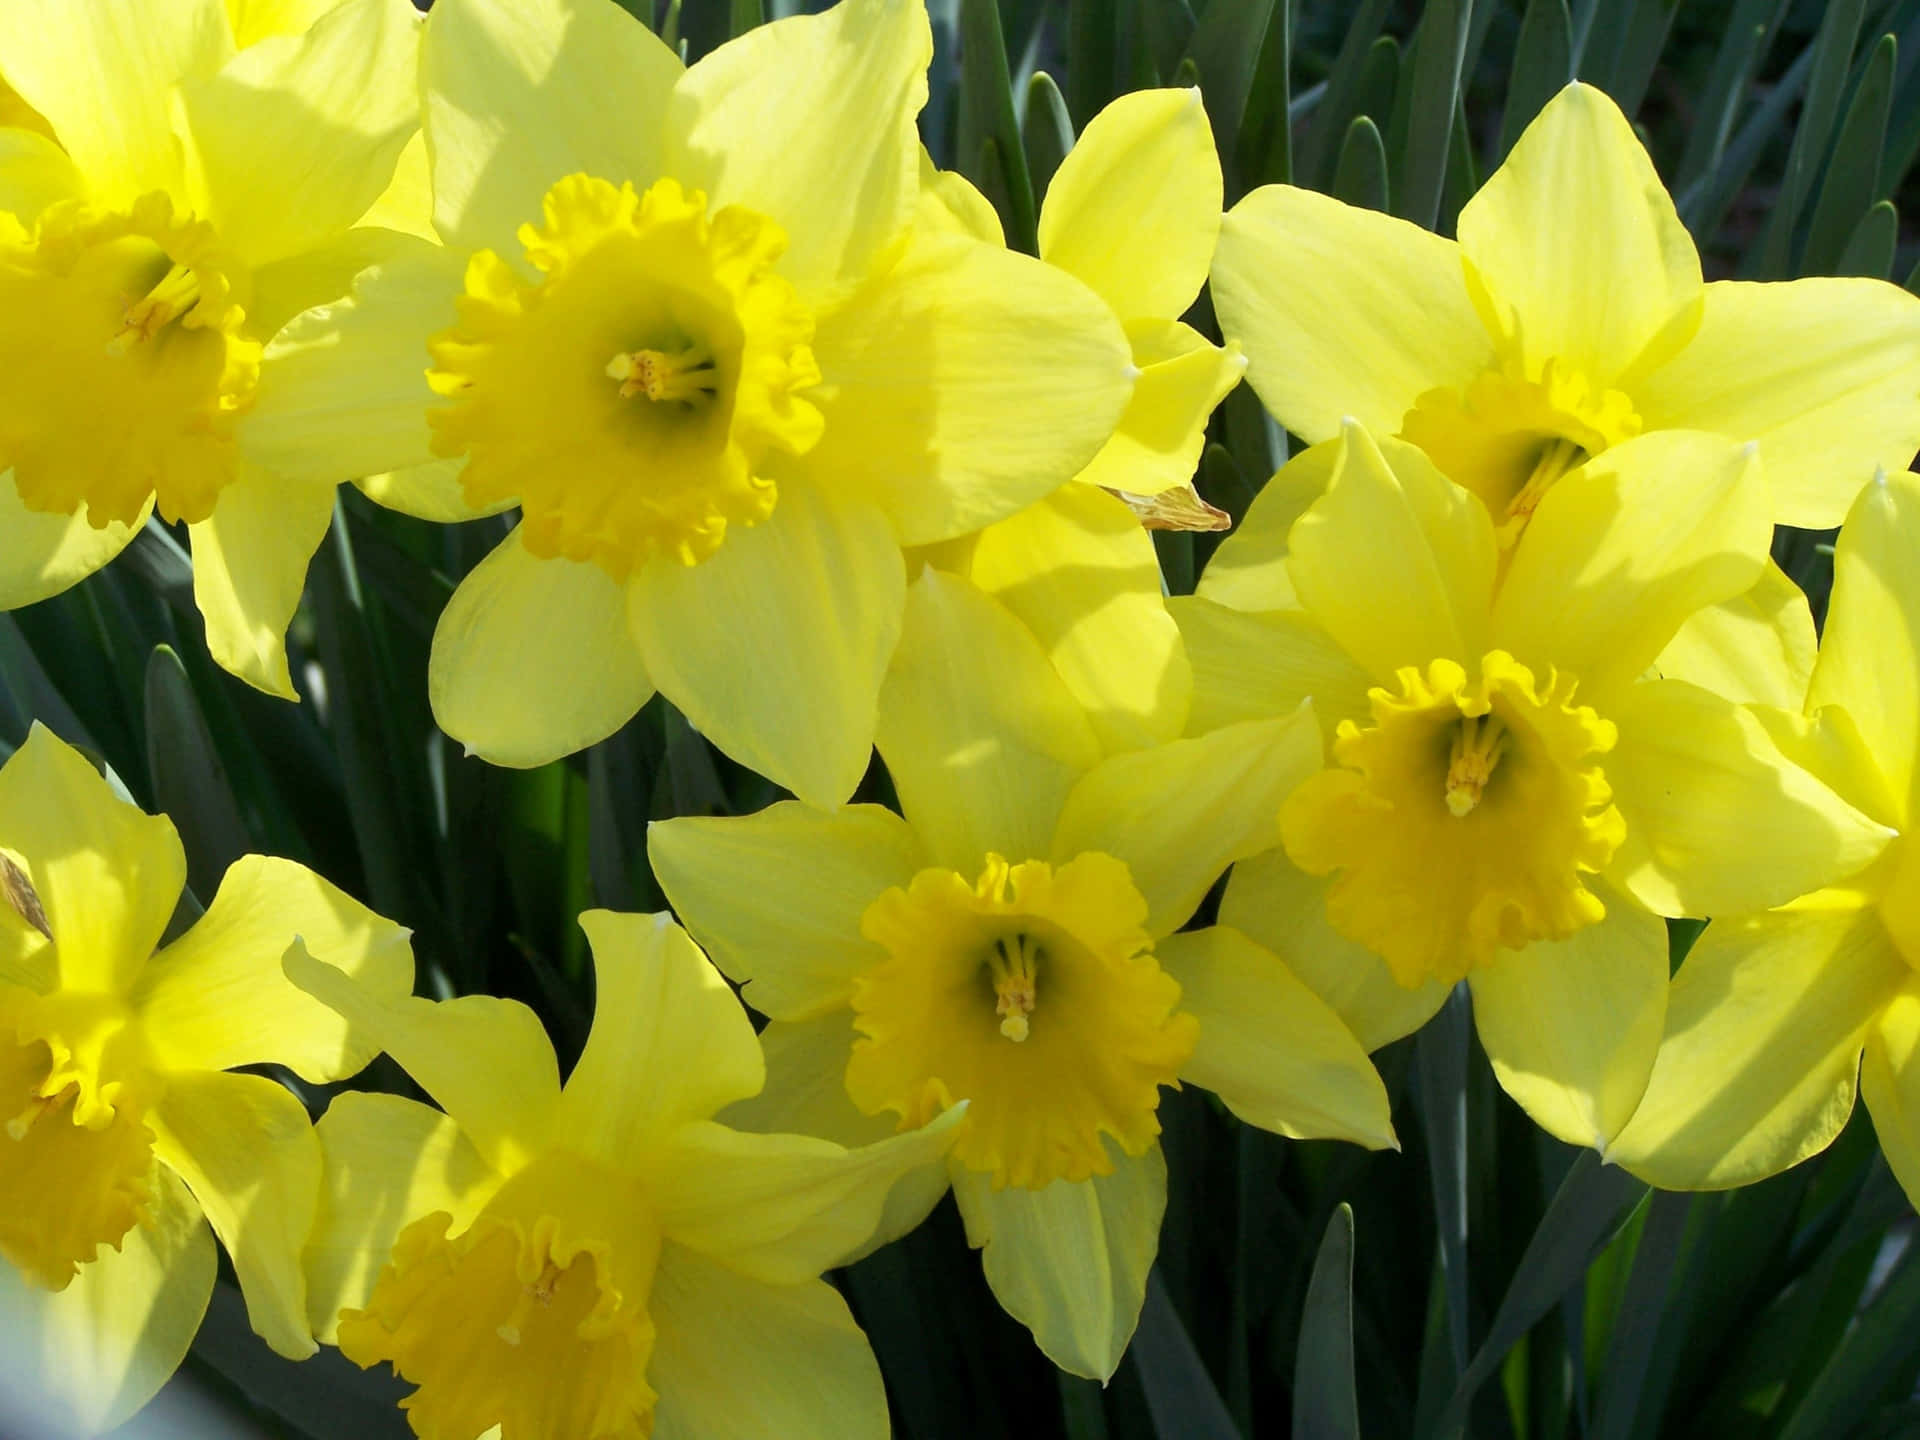 A blooming daffodil in full glory